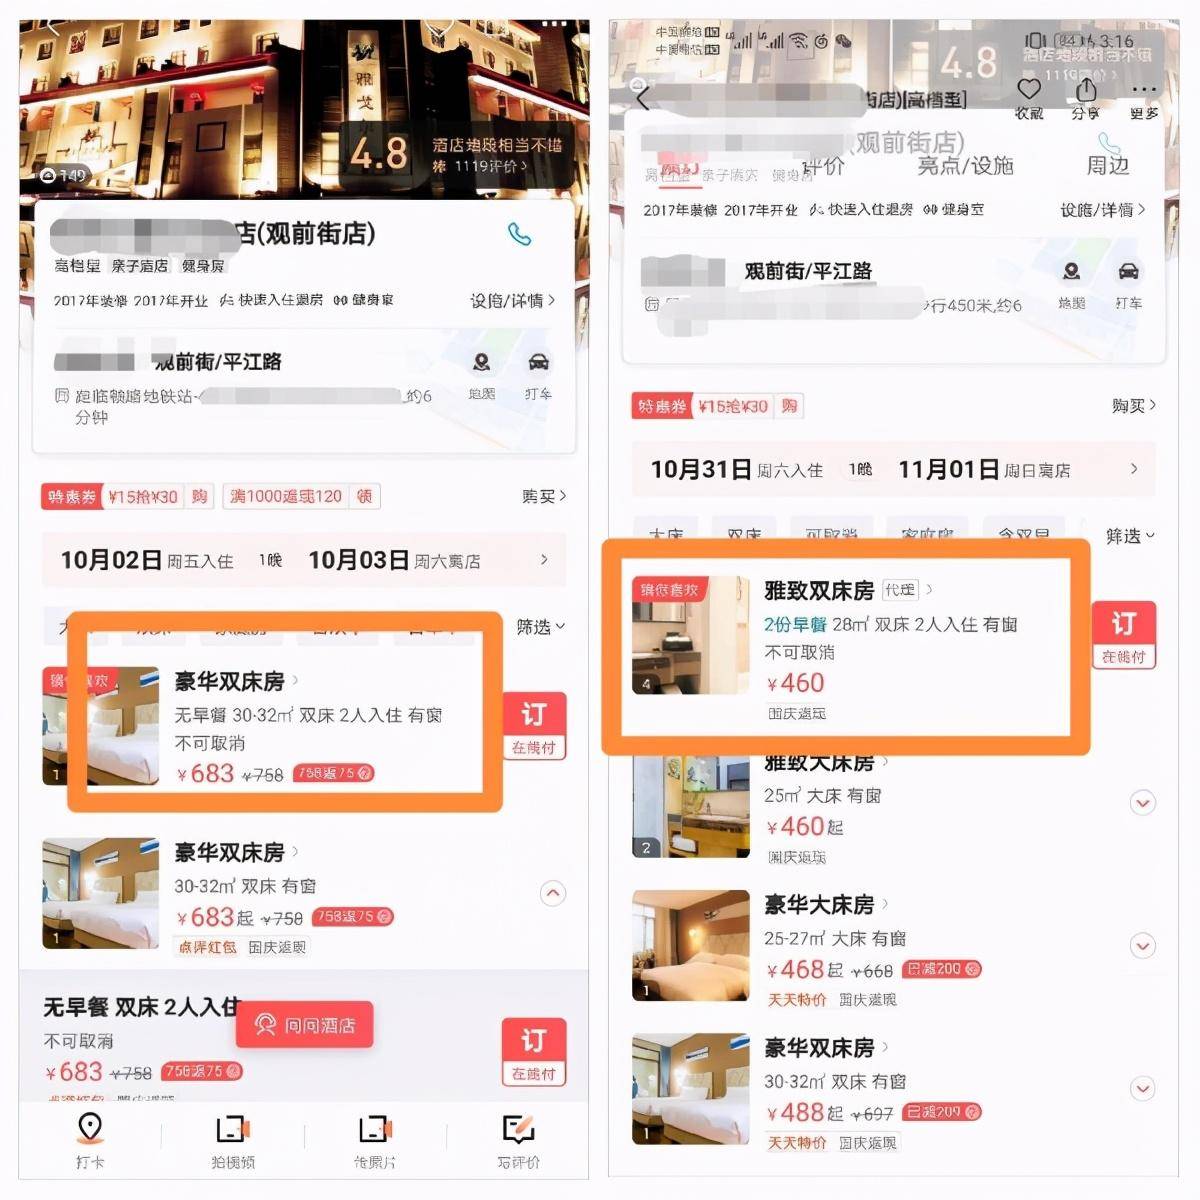 博鱼官方app姑苏太湖边网红民宿太火了11黄金周价钱比日常平凡下跌200元左